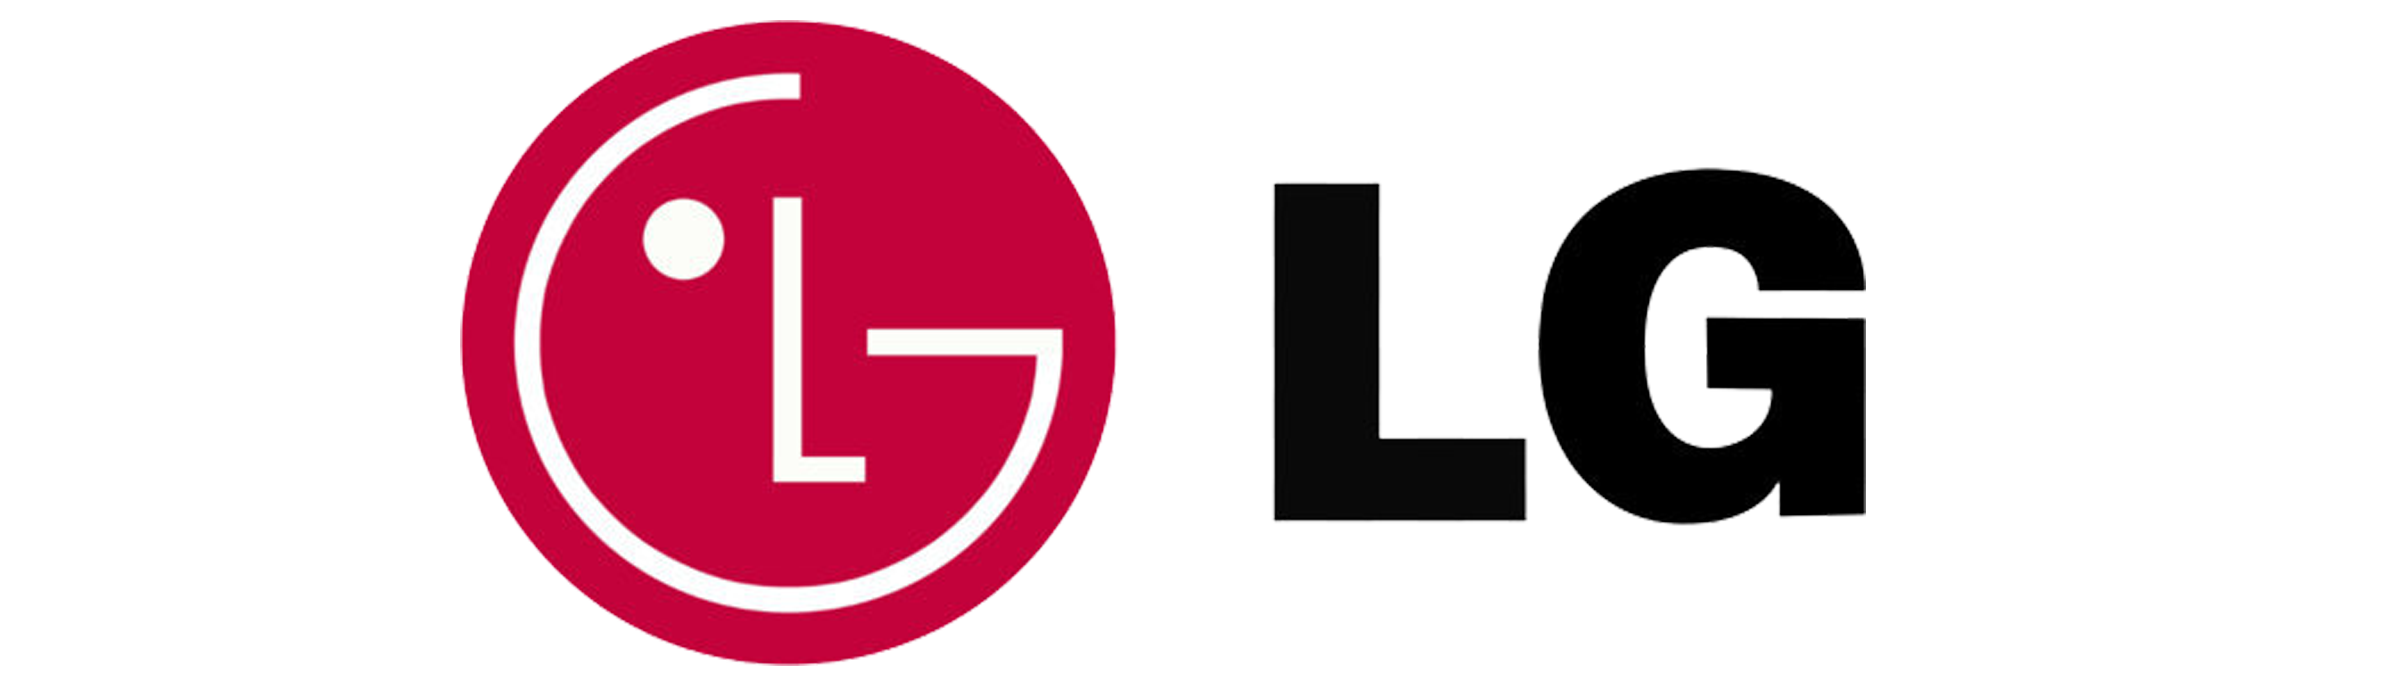 LG - Loxone